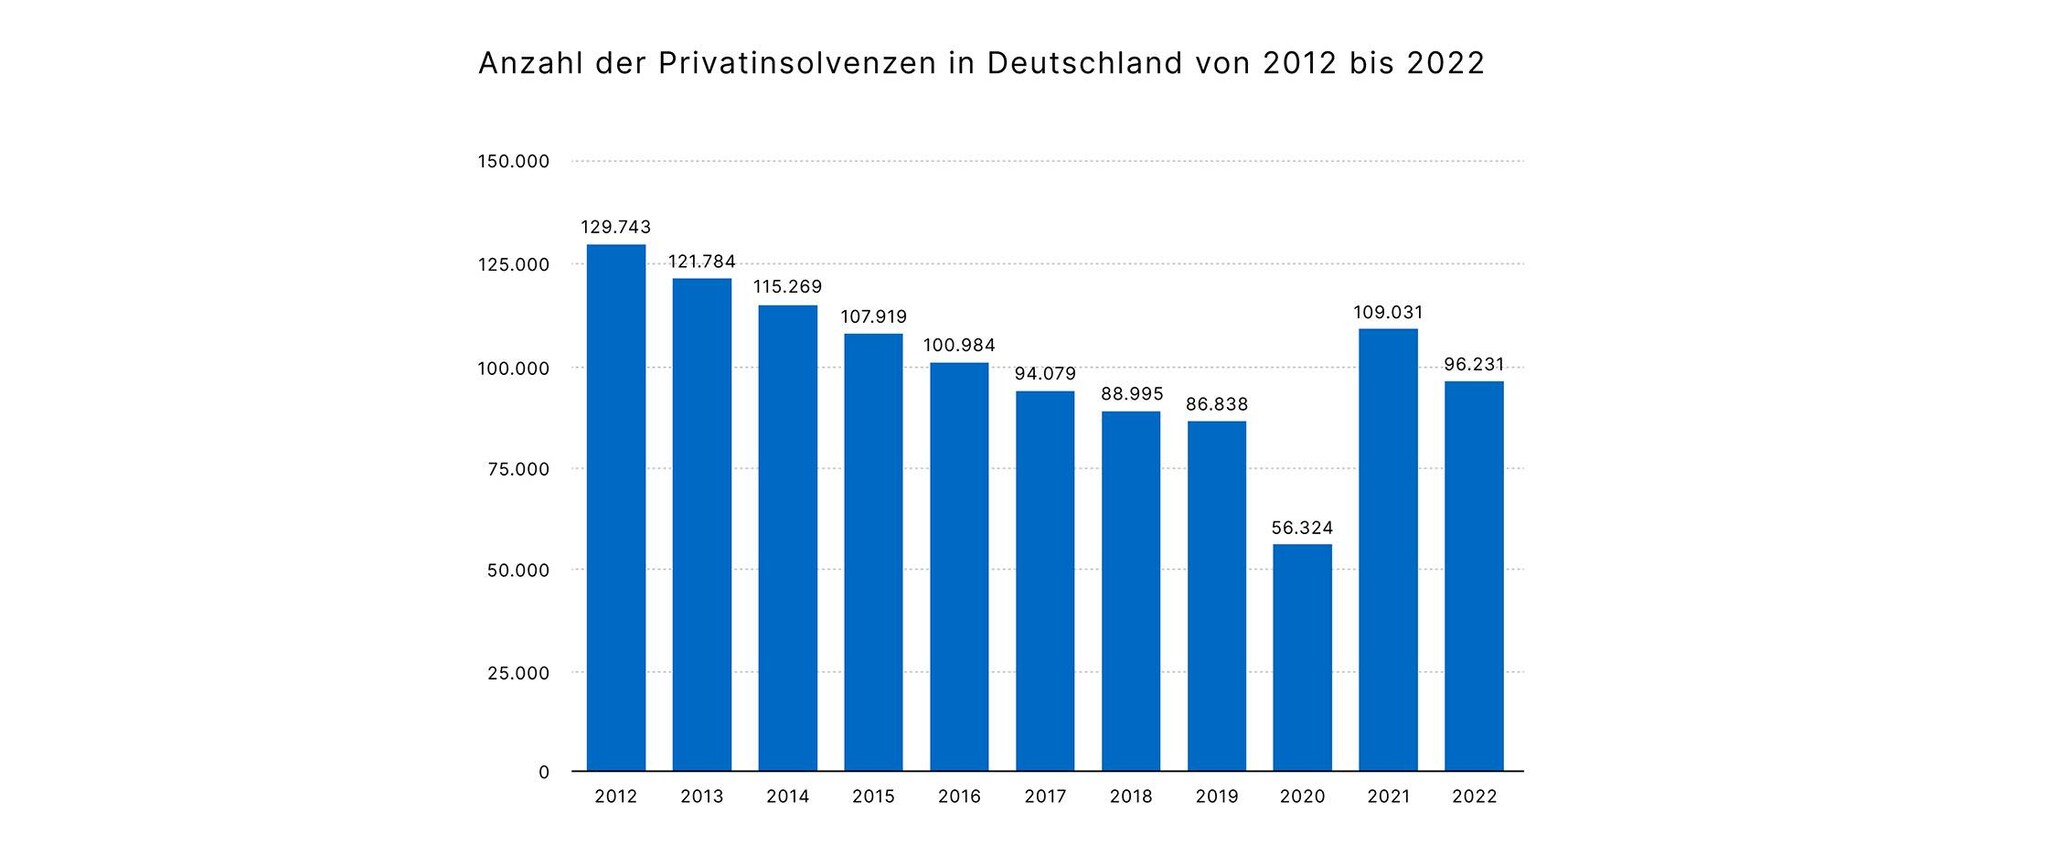 10014-3 Anzahl der Privatinsolvenzen in Deutschland von 2012 bis 2022_936x2240